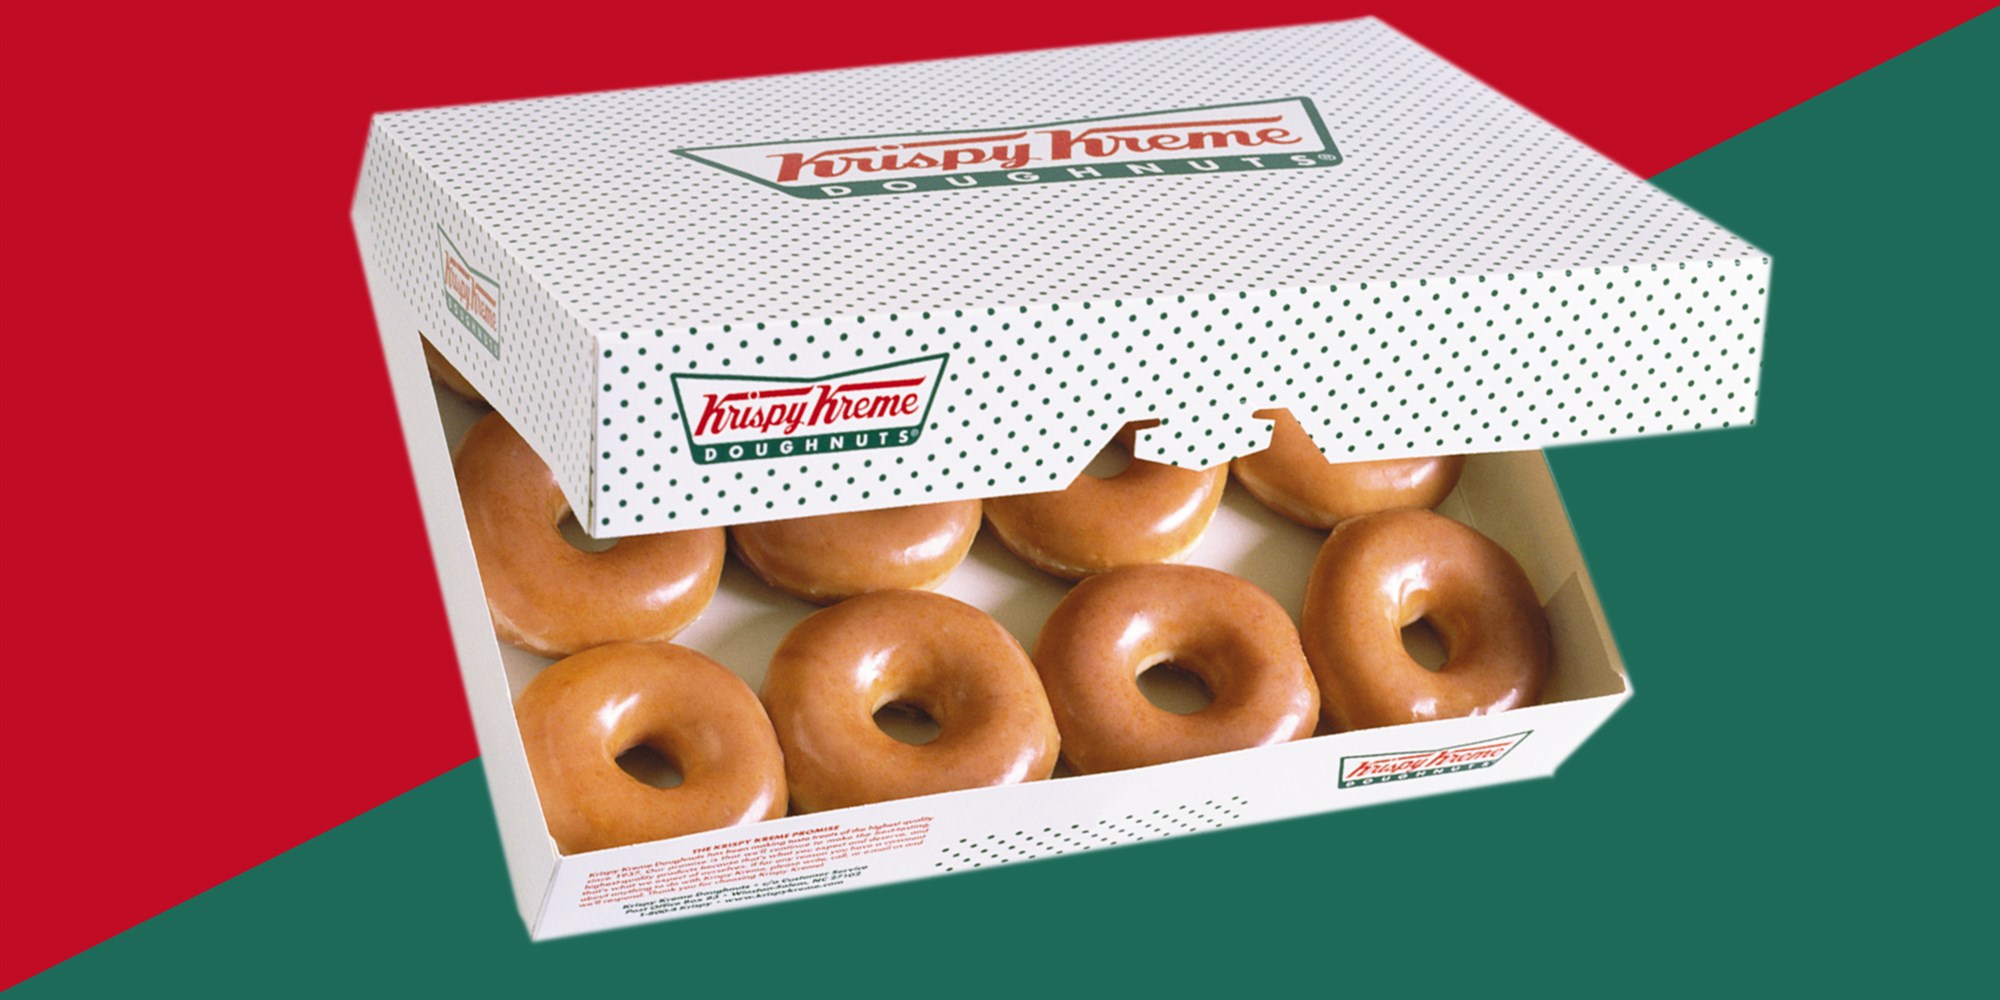 Krispy Kreme’s 1 dozen doughnut deal returns Wednesday WDBO